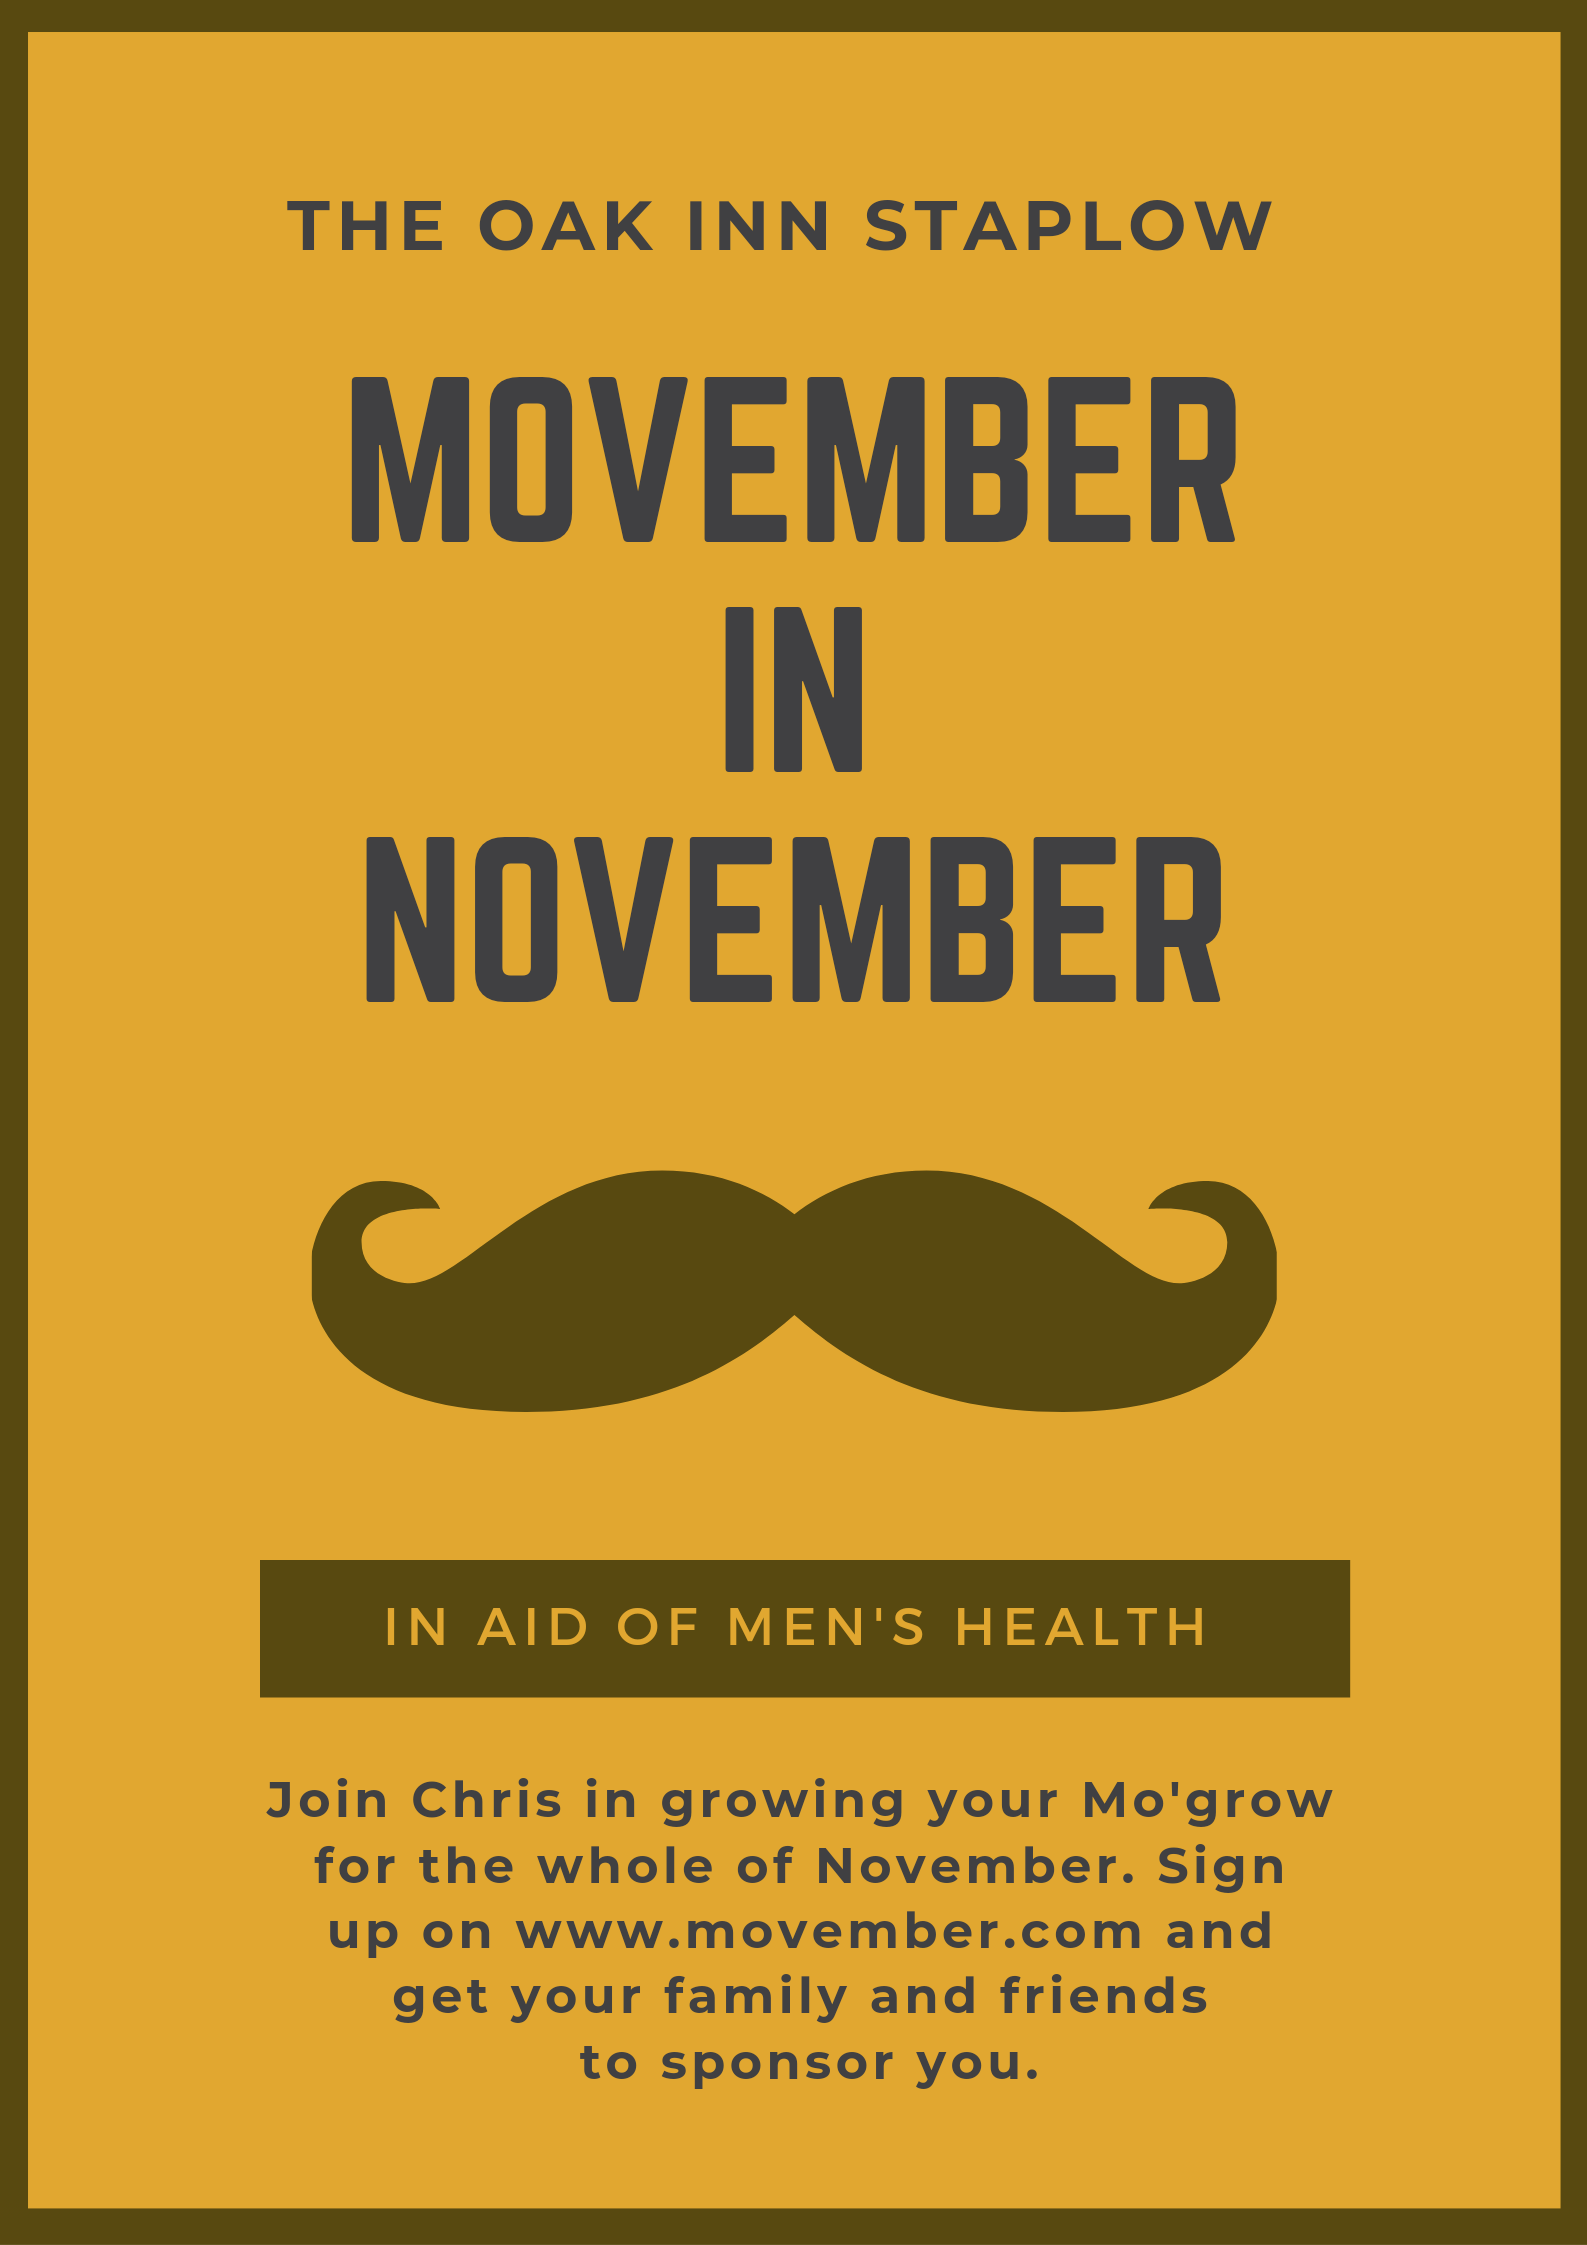 Movember in Novmber Charity Event The Oak Inn Staplow Ledbury